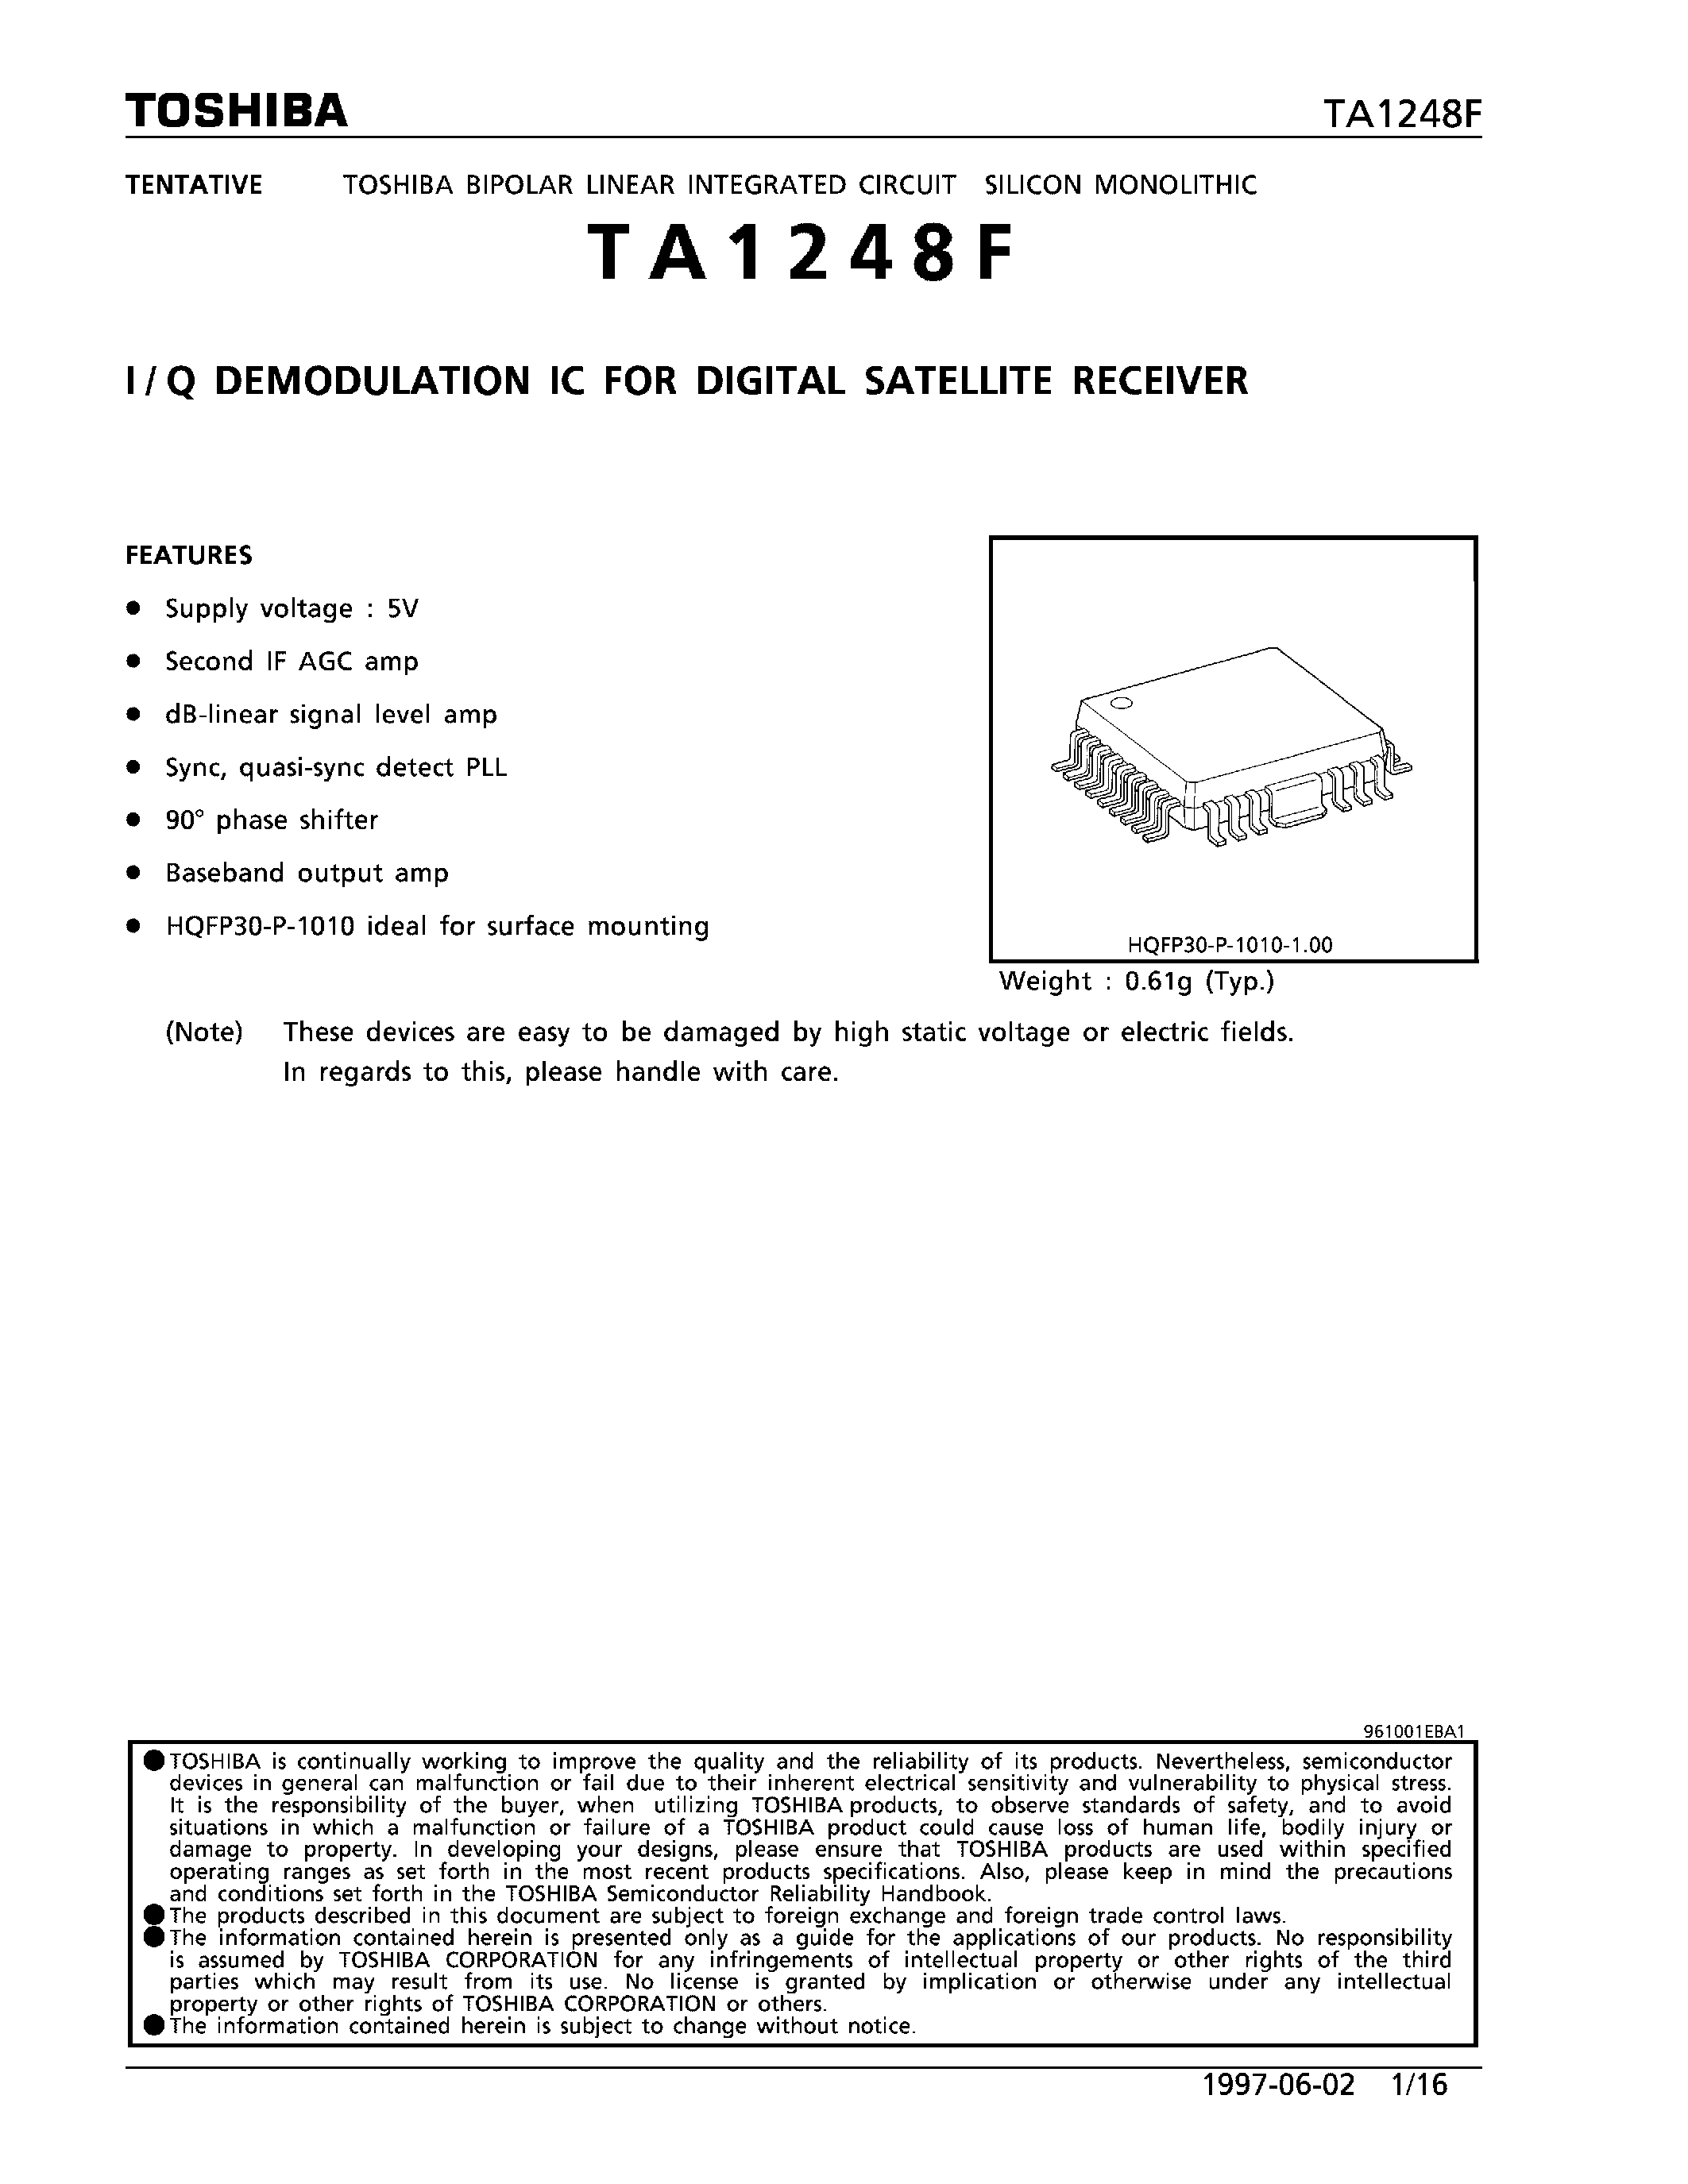 Даташит TA1248F - I/Q DEMODULATION IC FOR DIGITAL SATELLITE RECEIVER страница 1